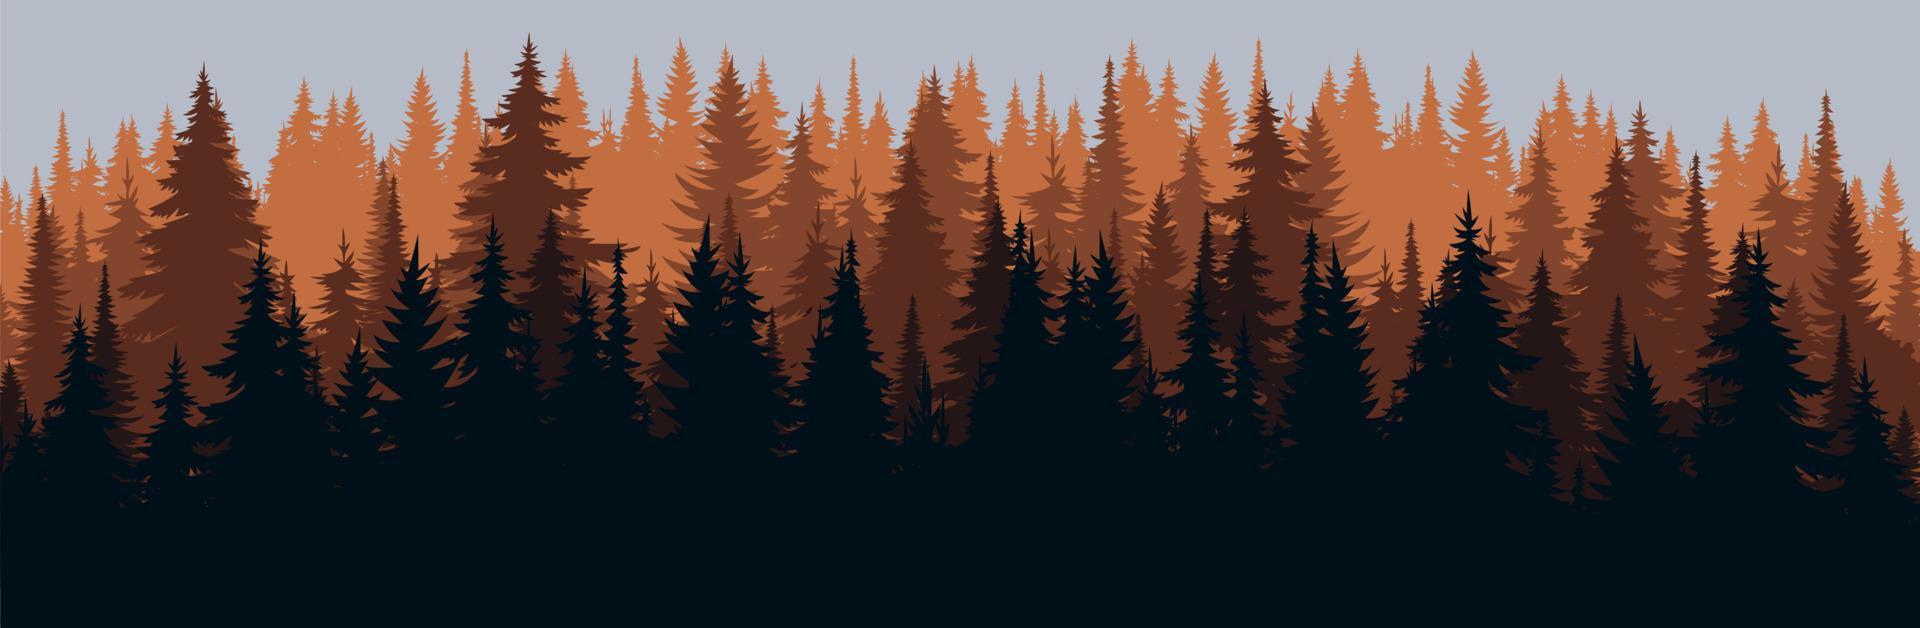 Vektor Berge Wald Hintergrundtextur, Silhouette von Nadelwald, Vektor. Herbstsaison orange, gelbe Bäume, Fichte, Tanne. horizontale Landschaft.